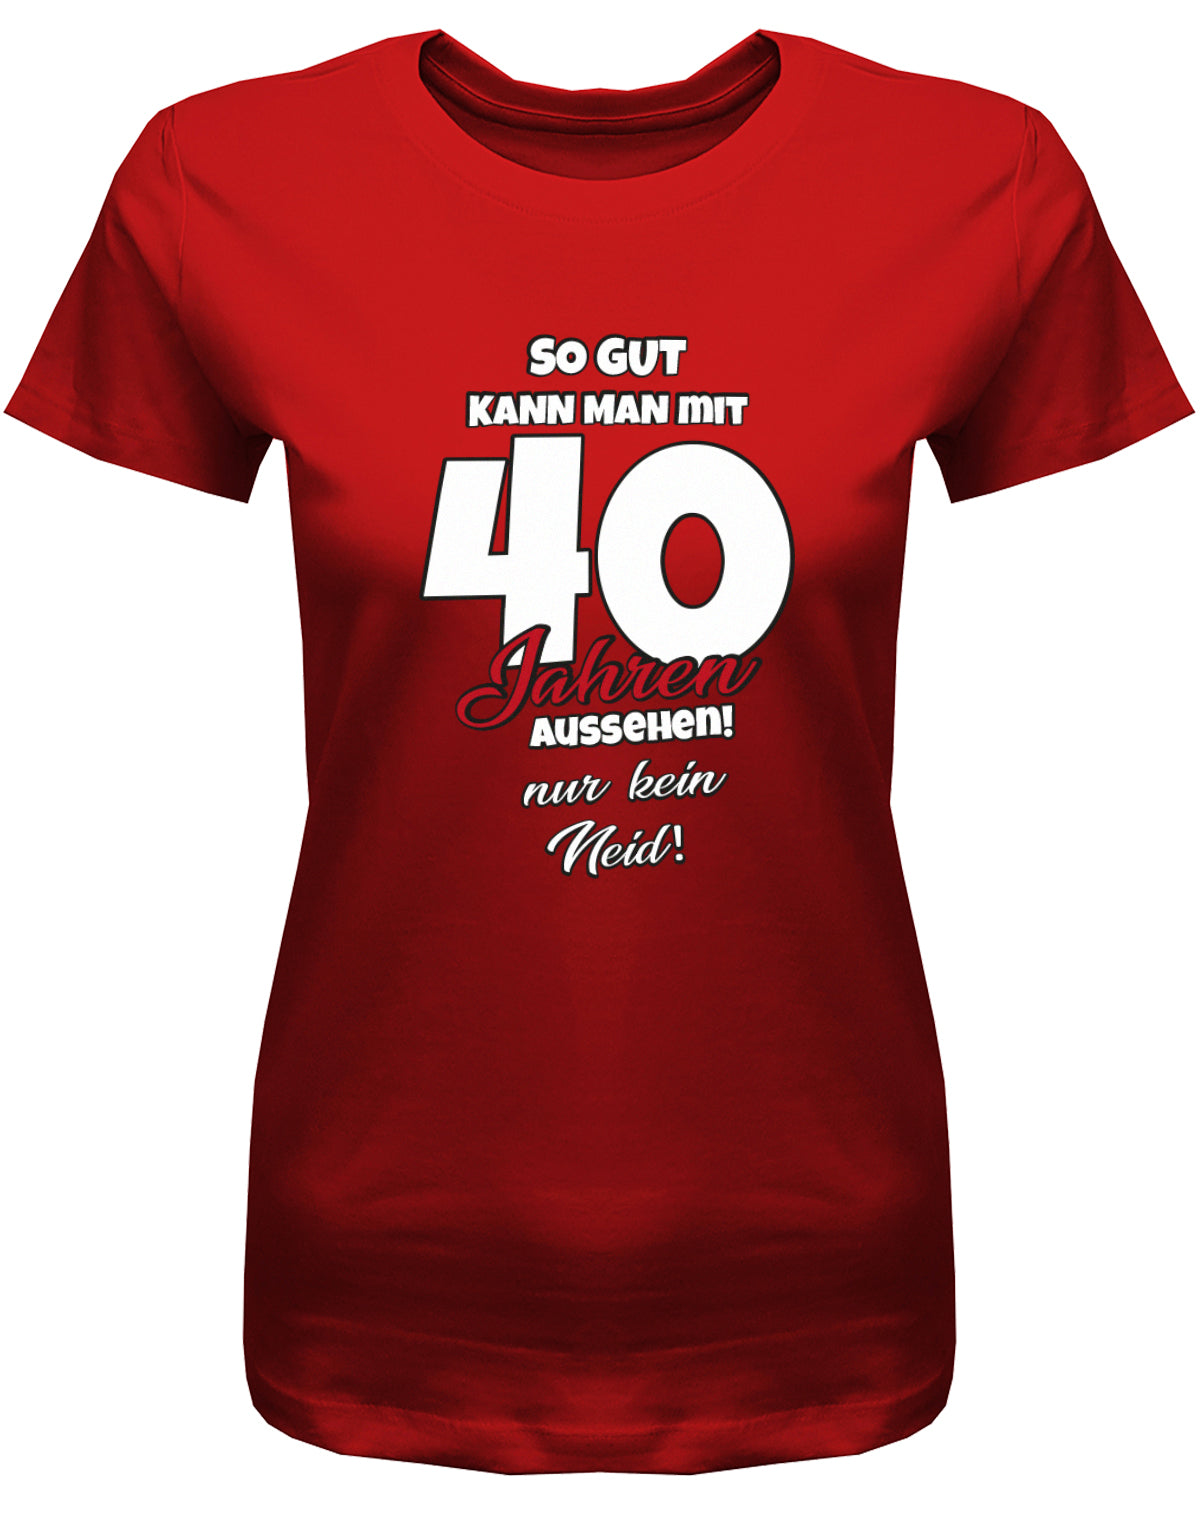 Lustiges T-Shirt zum 40 Geburtstag für die Frau Bedruckt mit So gut kann man mit 40 Jahren aussehen! Nur kein Neid! Rot